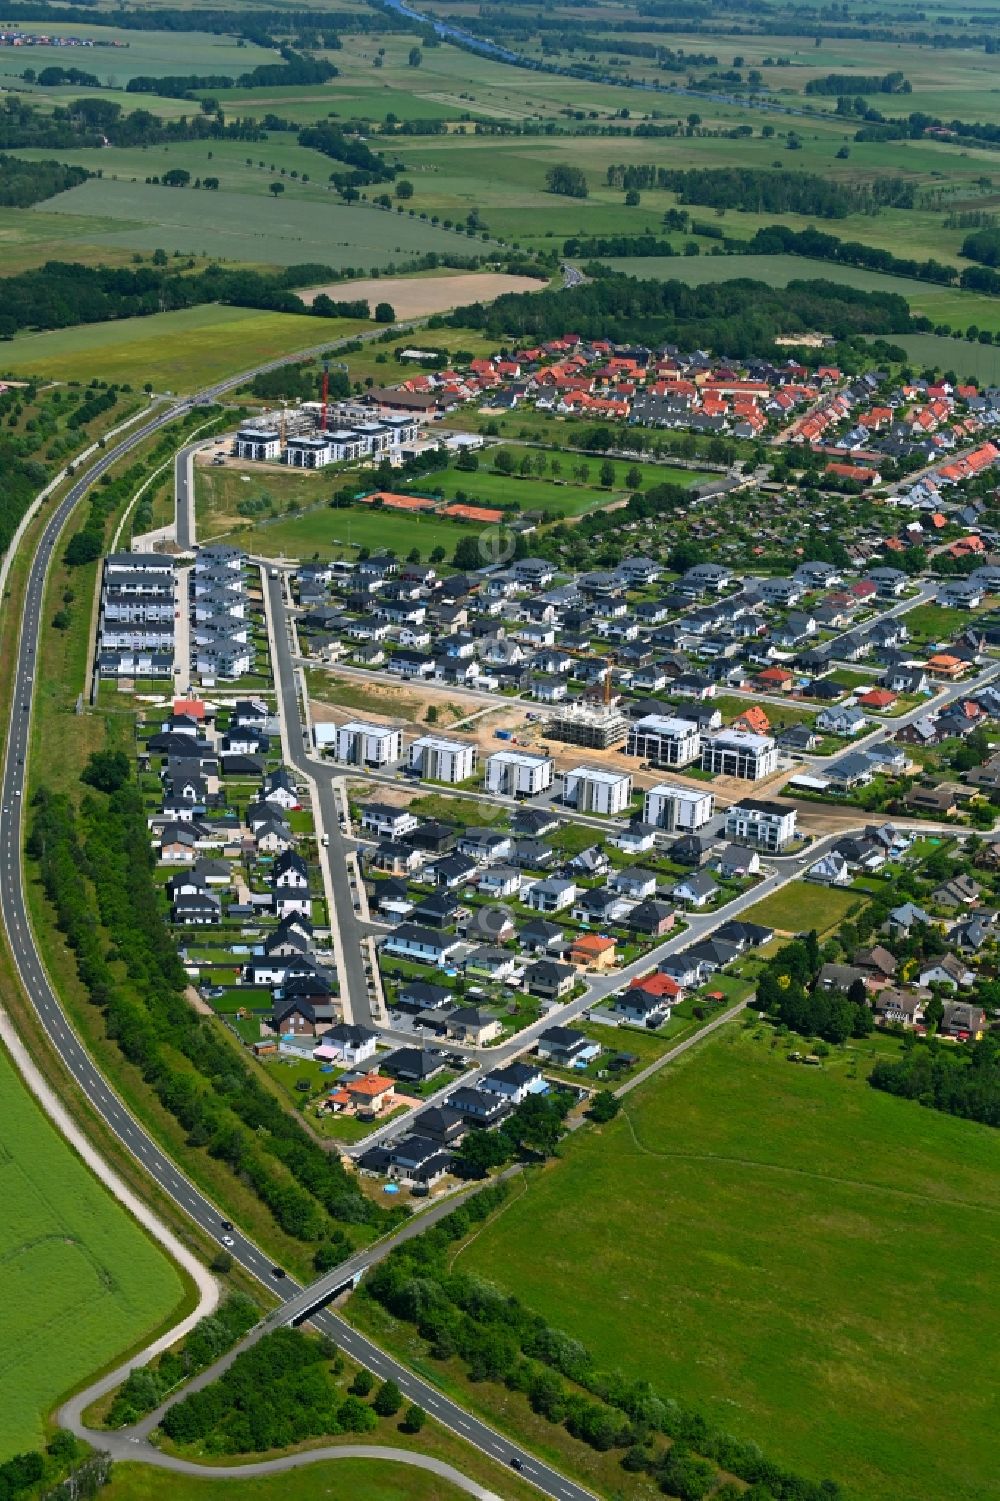 Luftbild Wolfsburg - Baustelle Mischbebauung eines Wohngebiets mit Mehrfamilienhäusern und Einfamilienhäusern Zur Wildzähnecke in Wolfsburg im Bundesland Niedersachsen, Deutschland